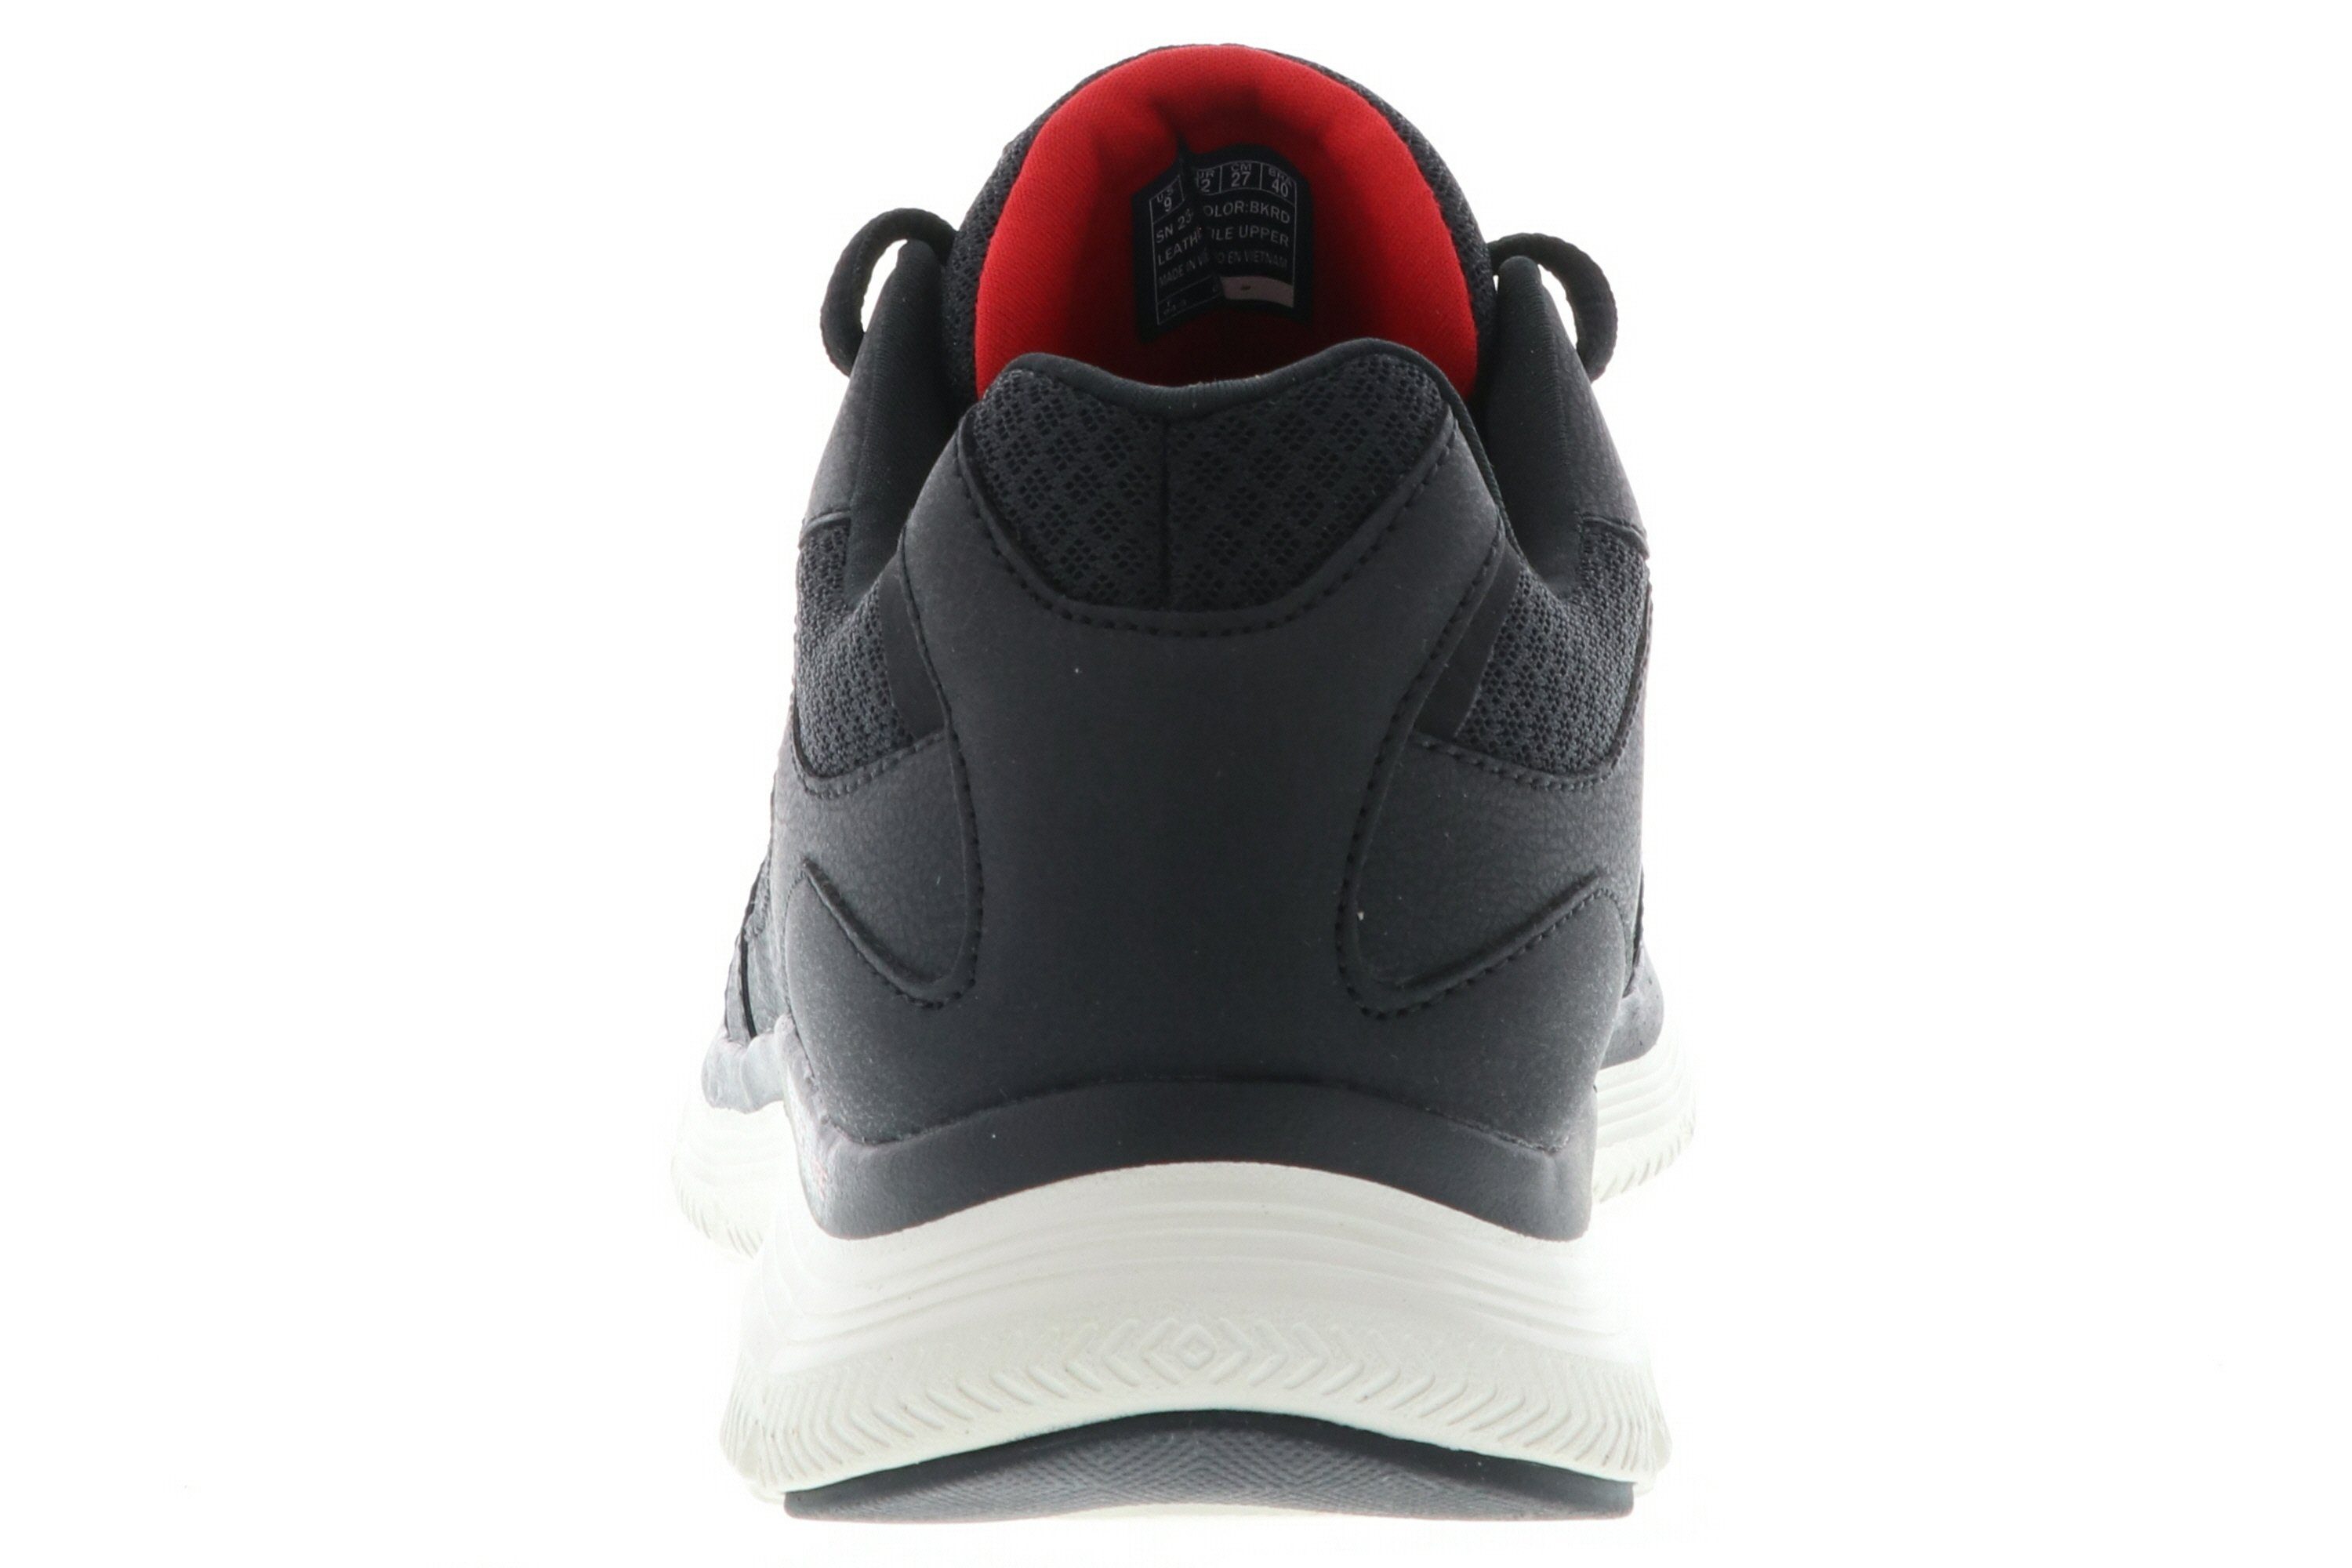 Skechers 232225/BKRD Flex Advantage / Sneaker Black/Red schwarz 4.0 rot